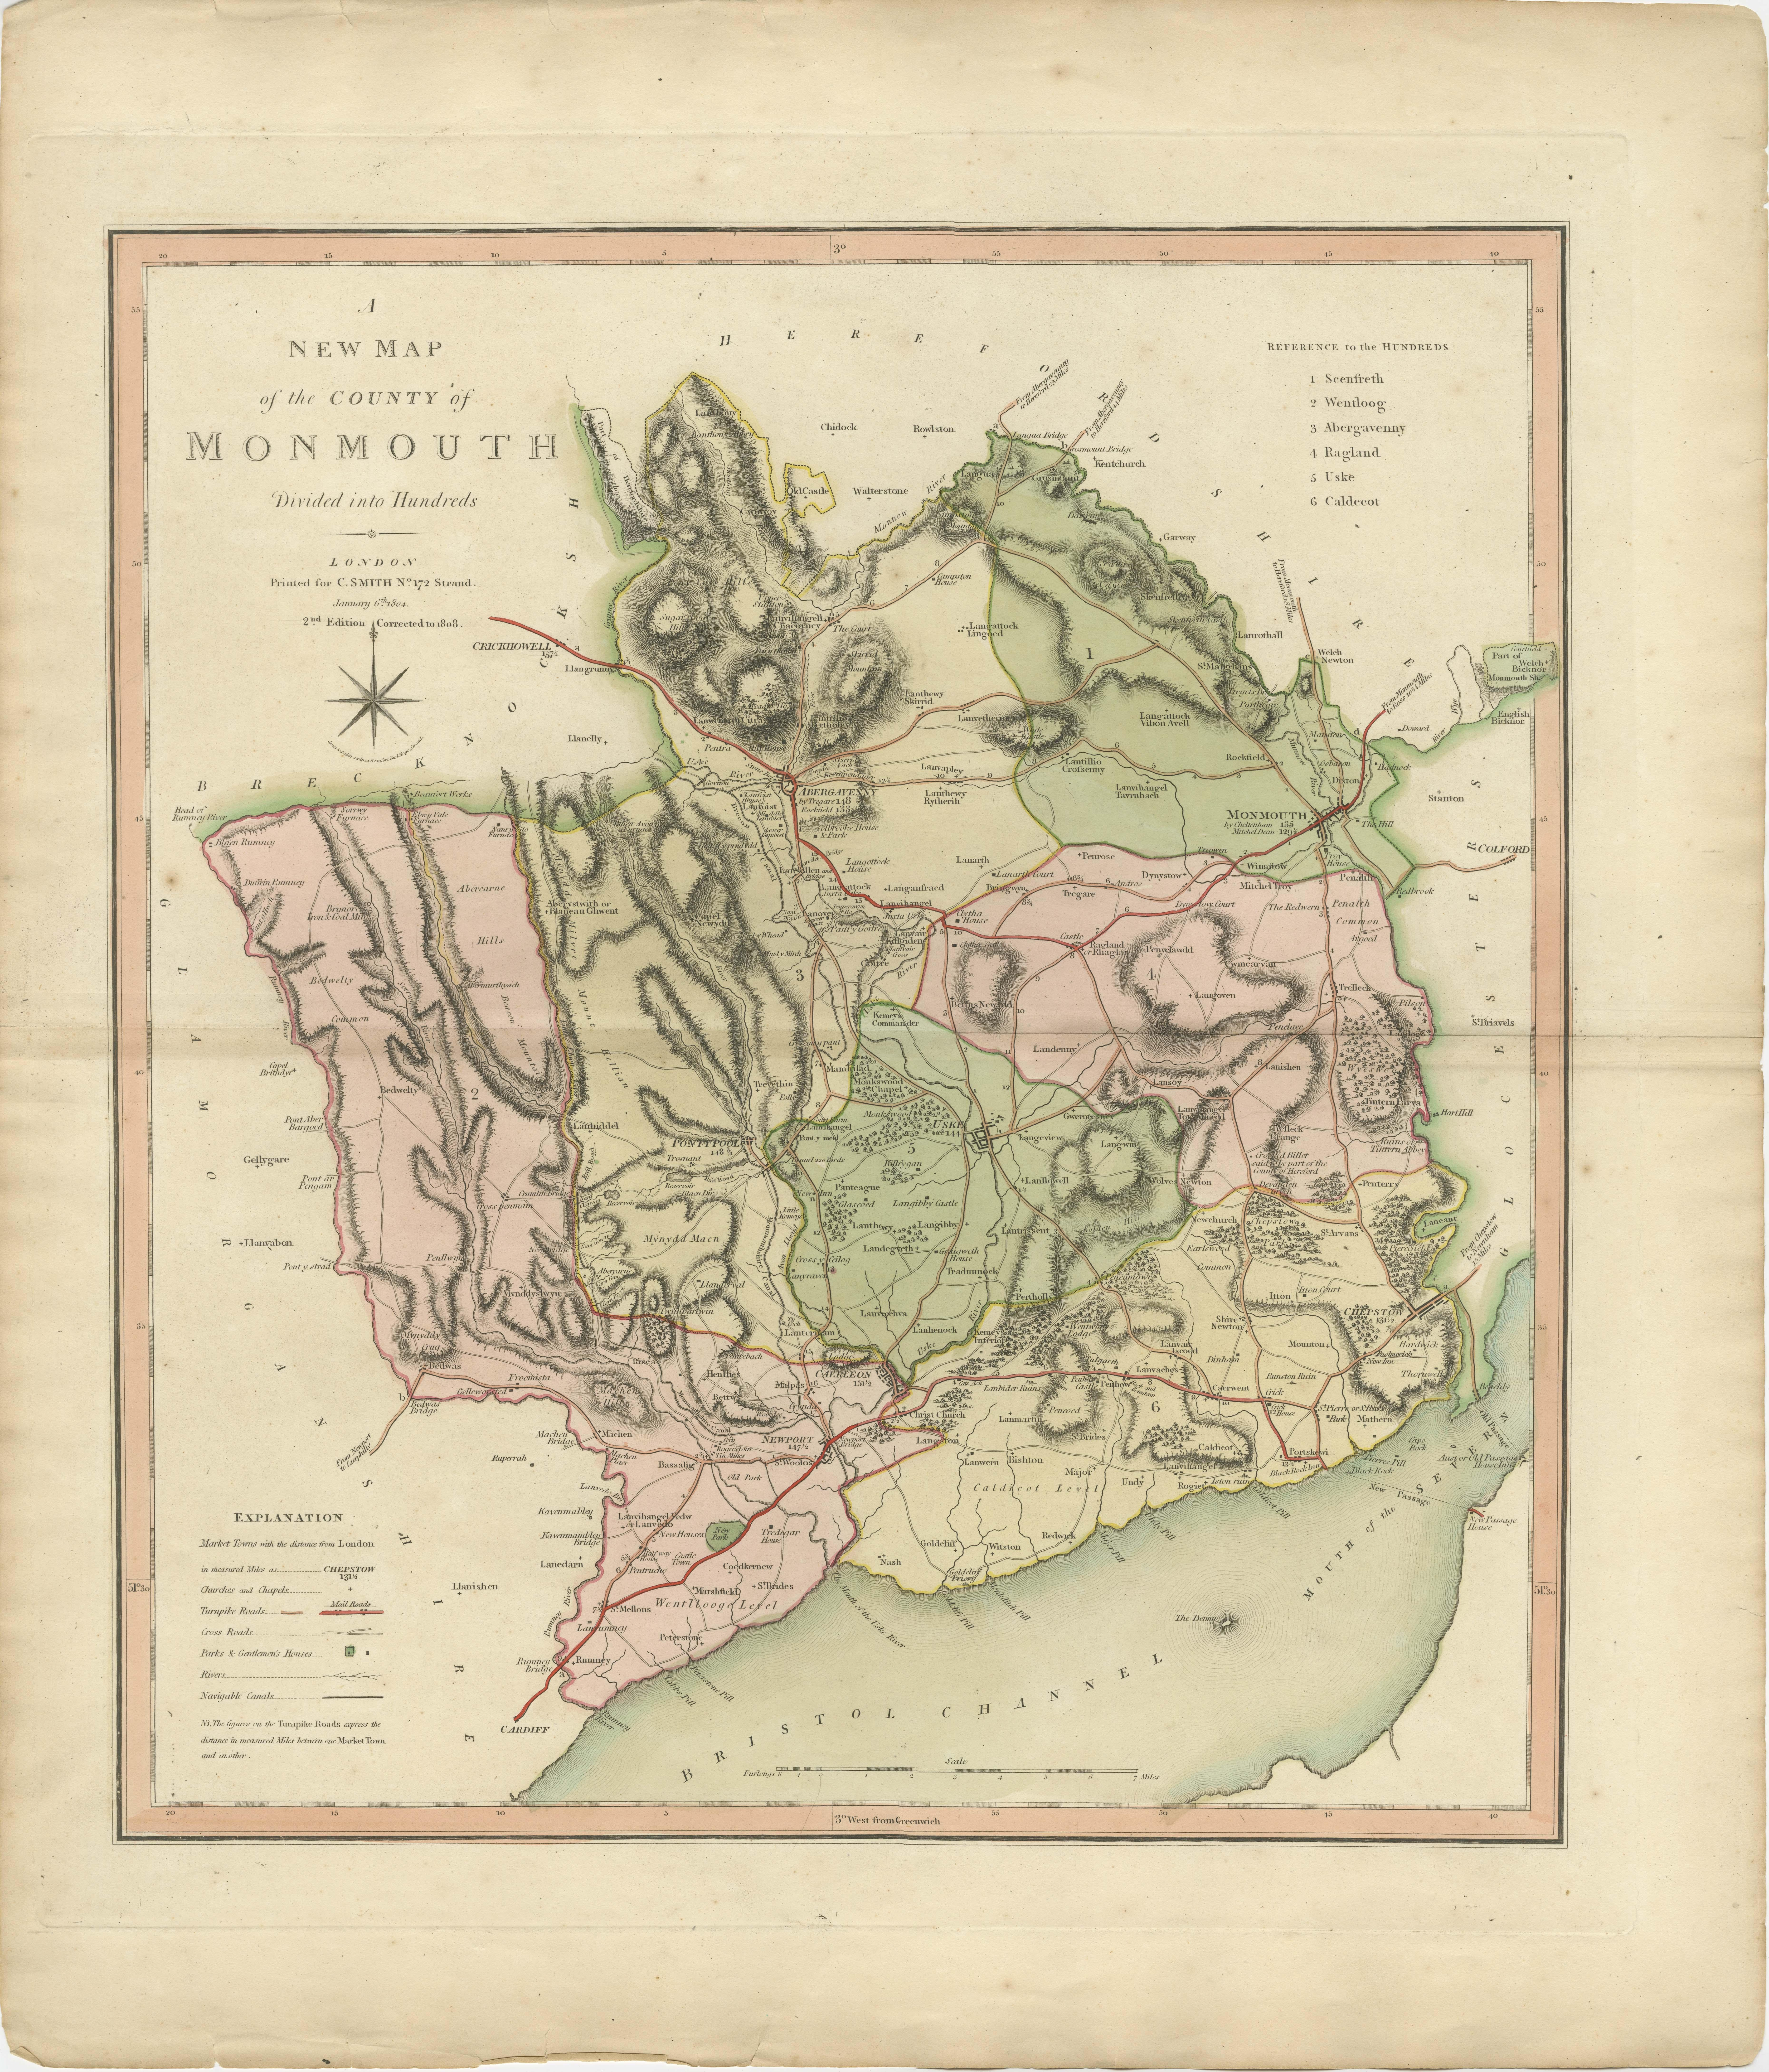 Carte ancienne du comté de Monmouthshire publiée pour la première fois vers 1800. Les villages, les villes et les cités illustrés comprennent Newport, Chepstow, Rockfield et Pontypool.

Charles Smith était un cartographe travaillant à Londres vers